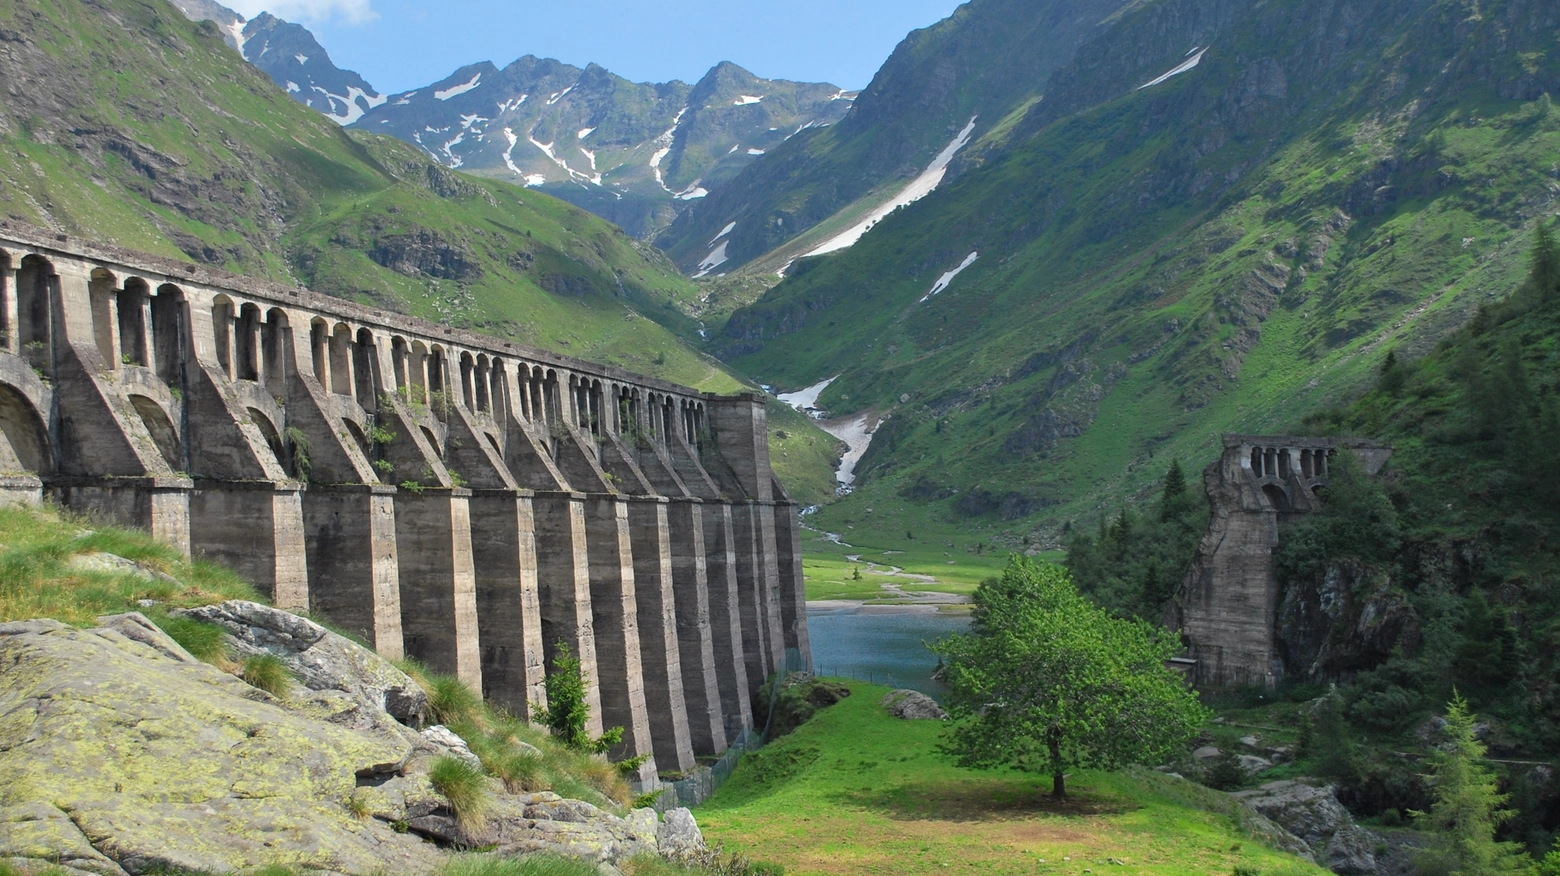 Servono ad alimentare le centrali idroelettriche e sono gestite da grosse utility. Legambiente Lombardia: “Urge riassegnarle a operatori che investano contro i disastri”